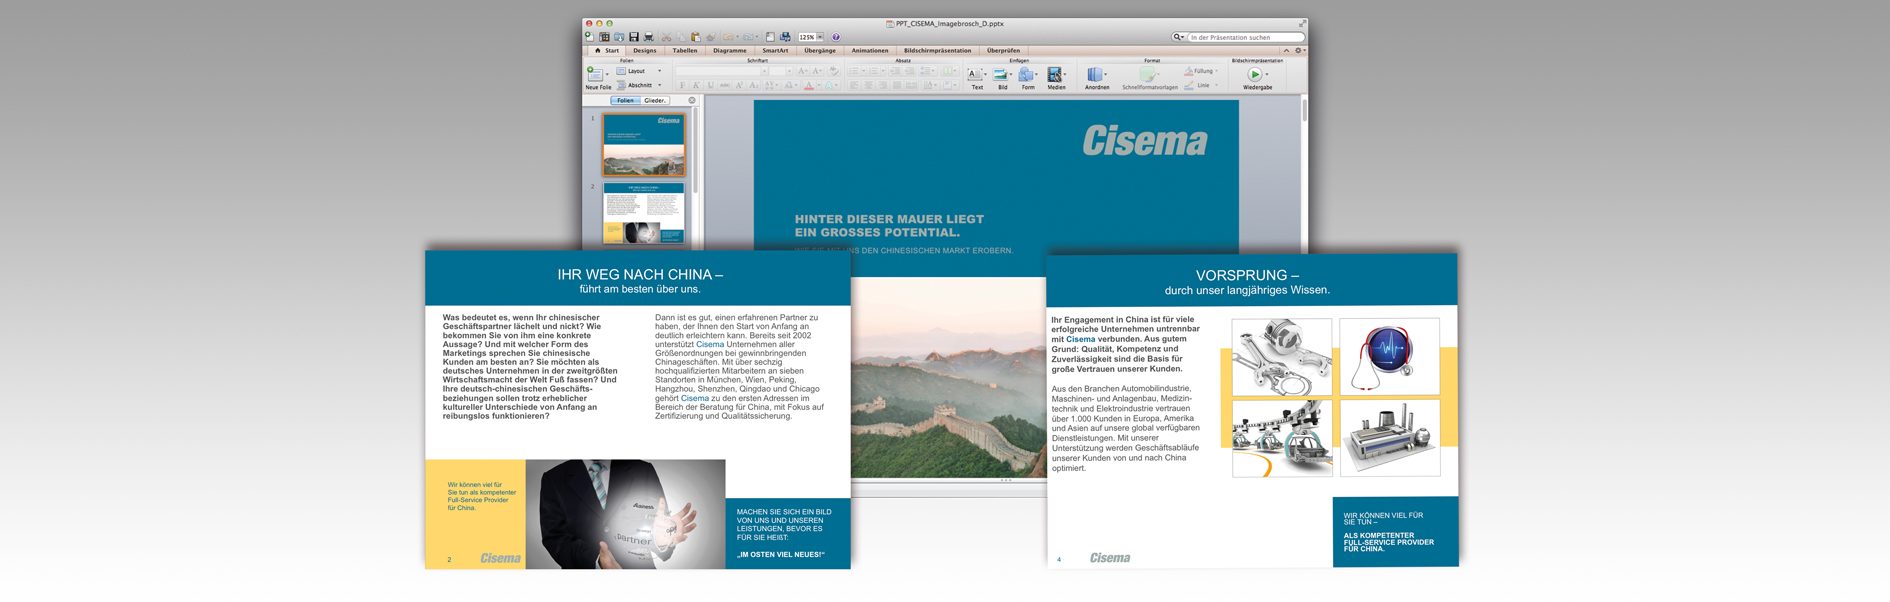 Ein kleiner Auszug aus der Cisema PowerPoint Präsentation.